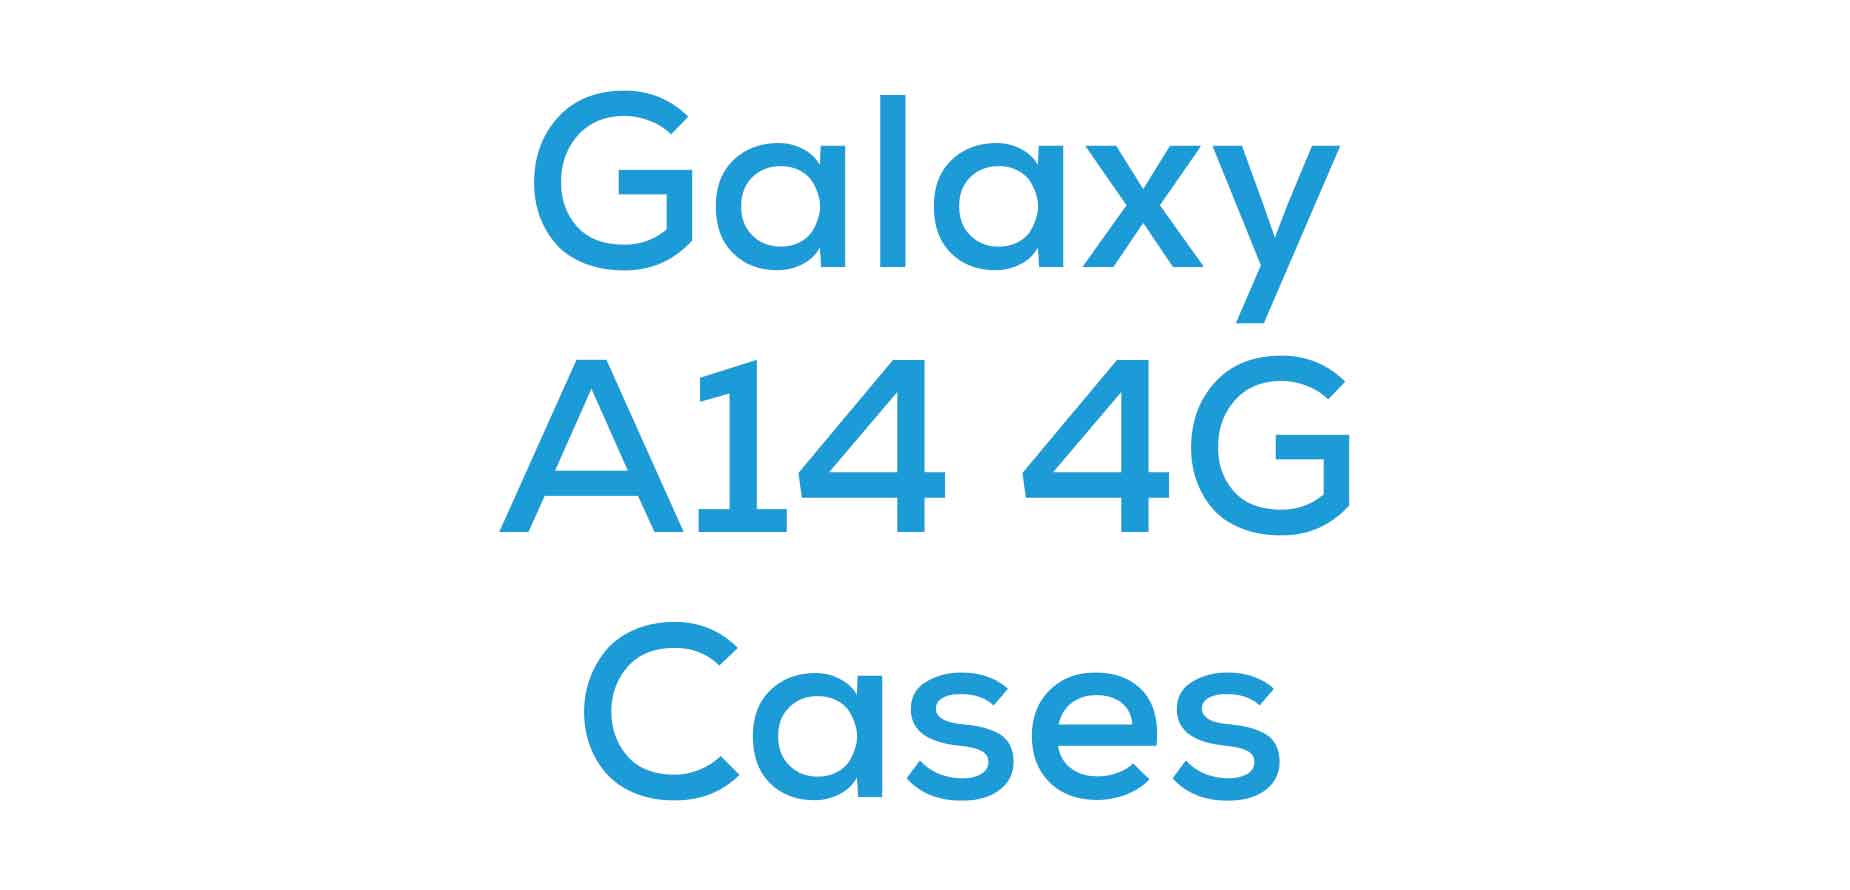 Galaxy A14 4G Cases